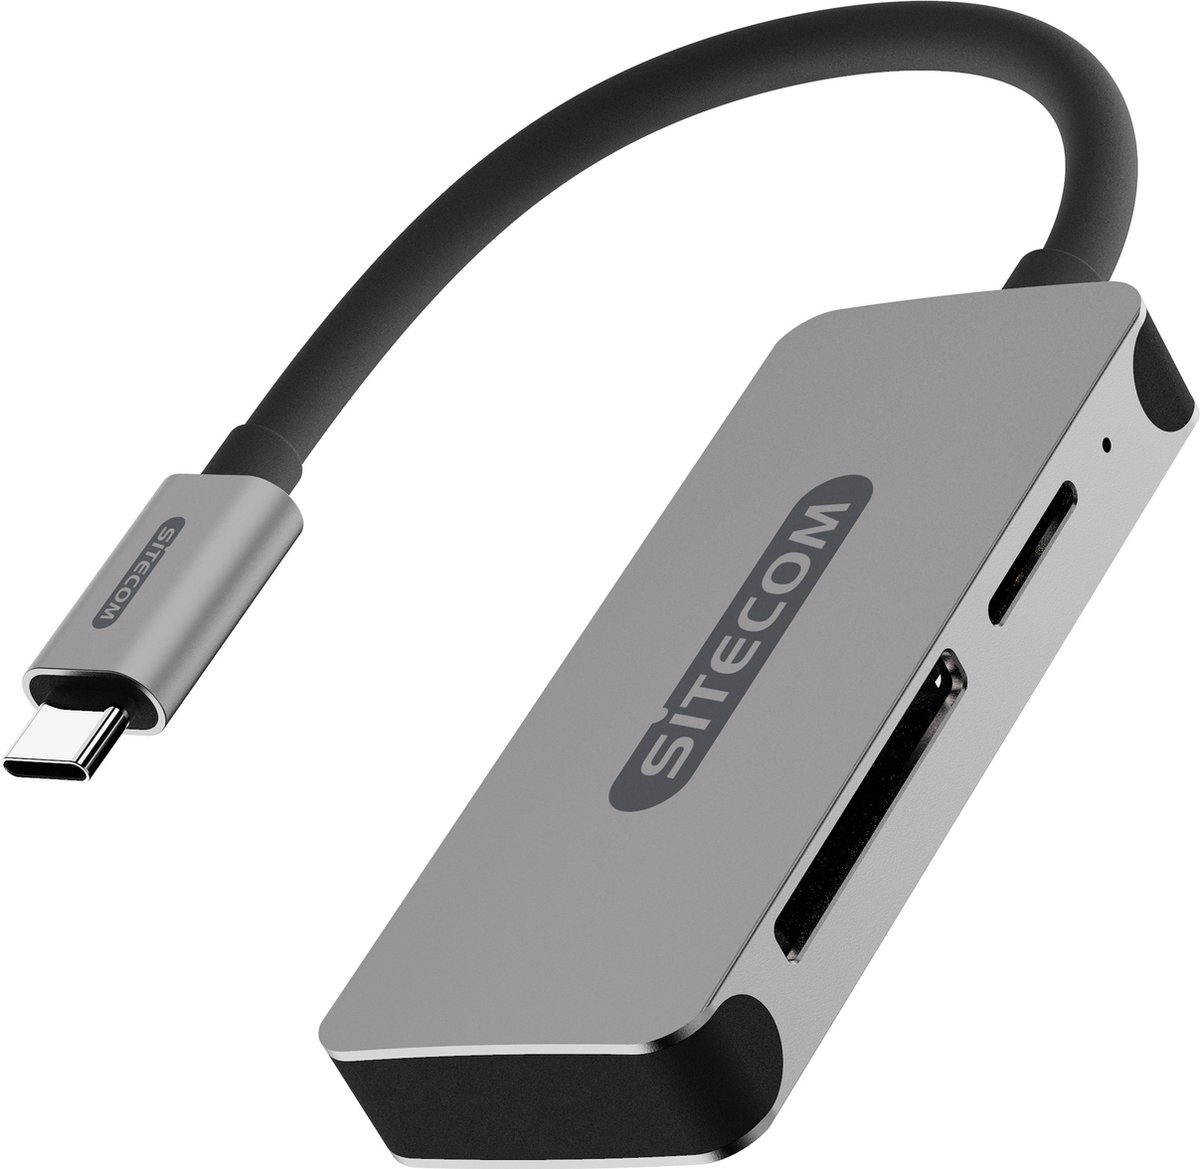 Sitecom - Snelle USB-C kaartlezer en schrijver voor SD en MicroSD geheugenkaarten - Sitecom